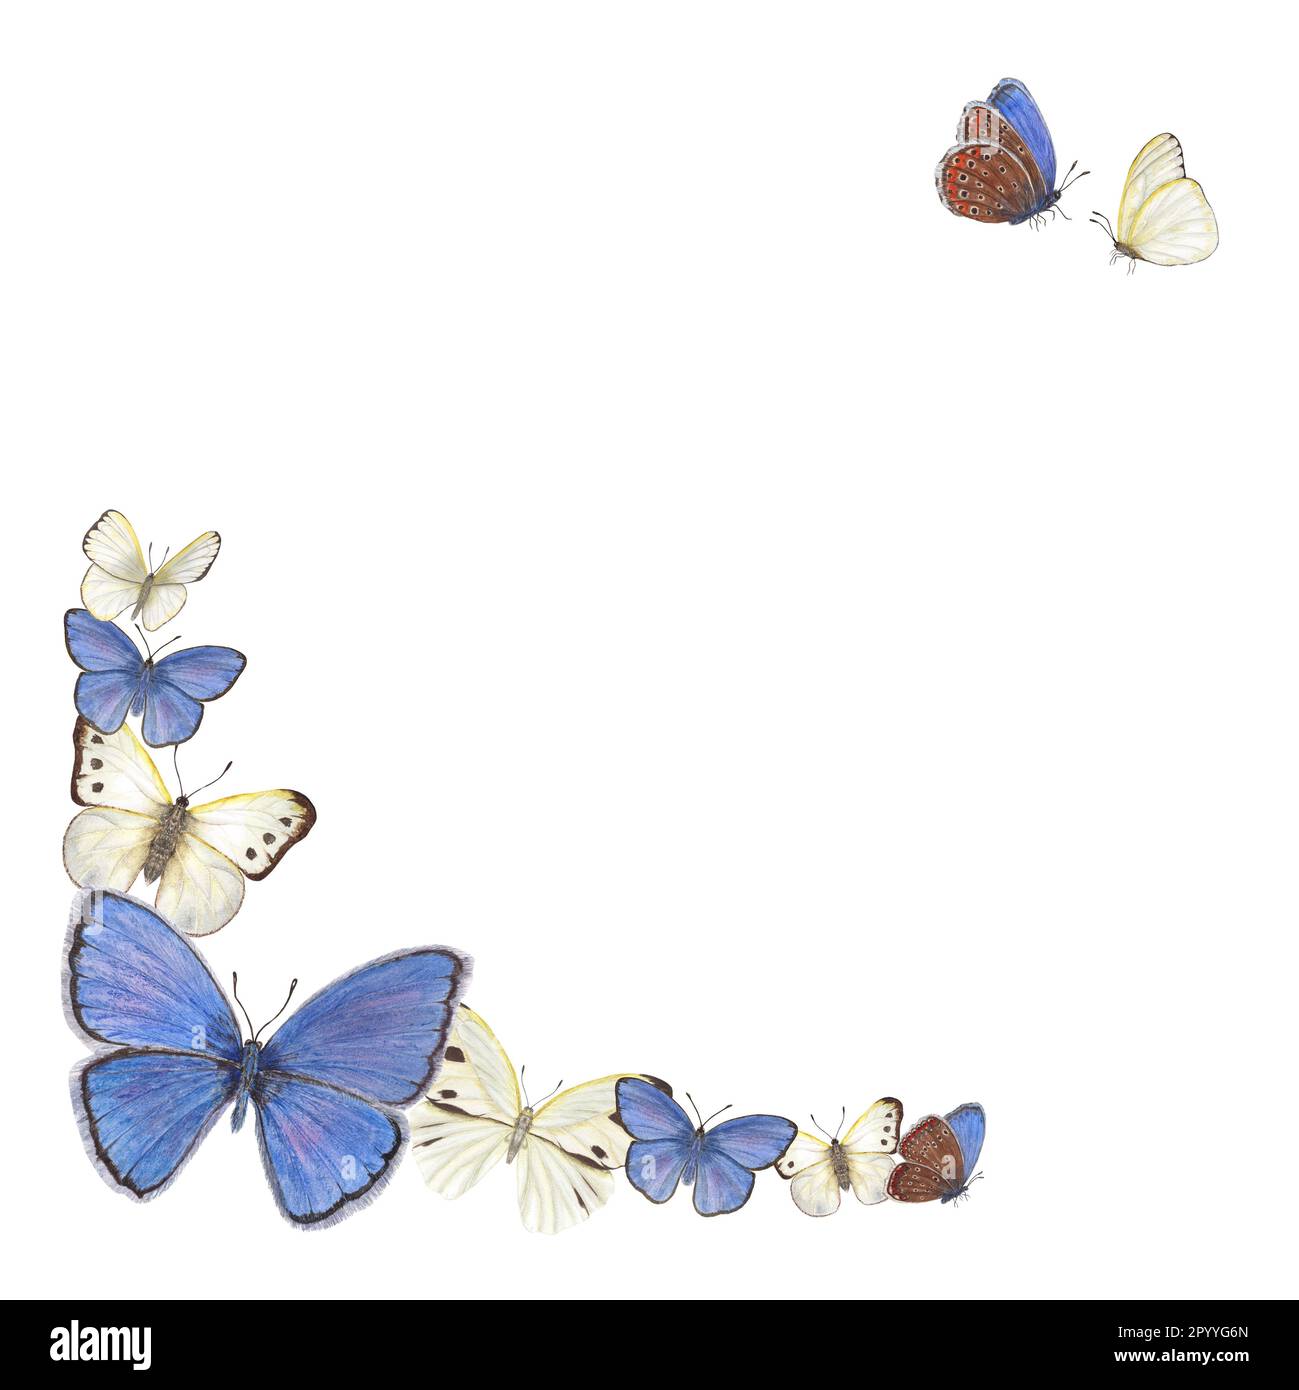 Aquarell mit Schmetterlingen auf weißem Hintergrund. Abbildung enthält Platz für Ihren Text. Als Begrüßung, Geburtstagskarten Stockfoto